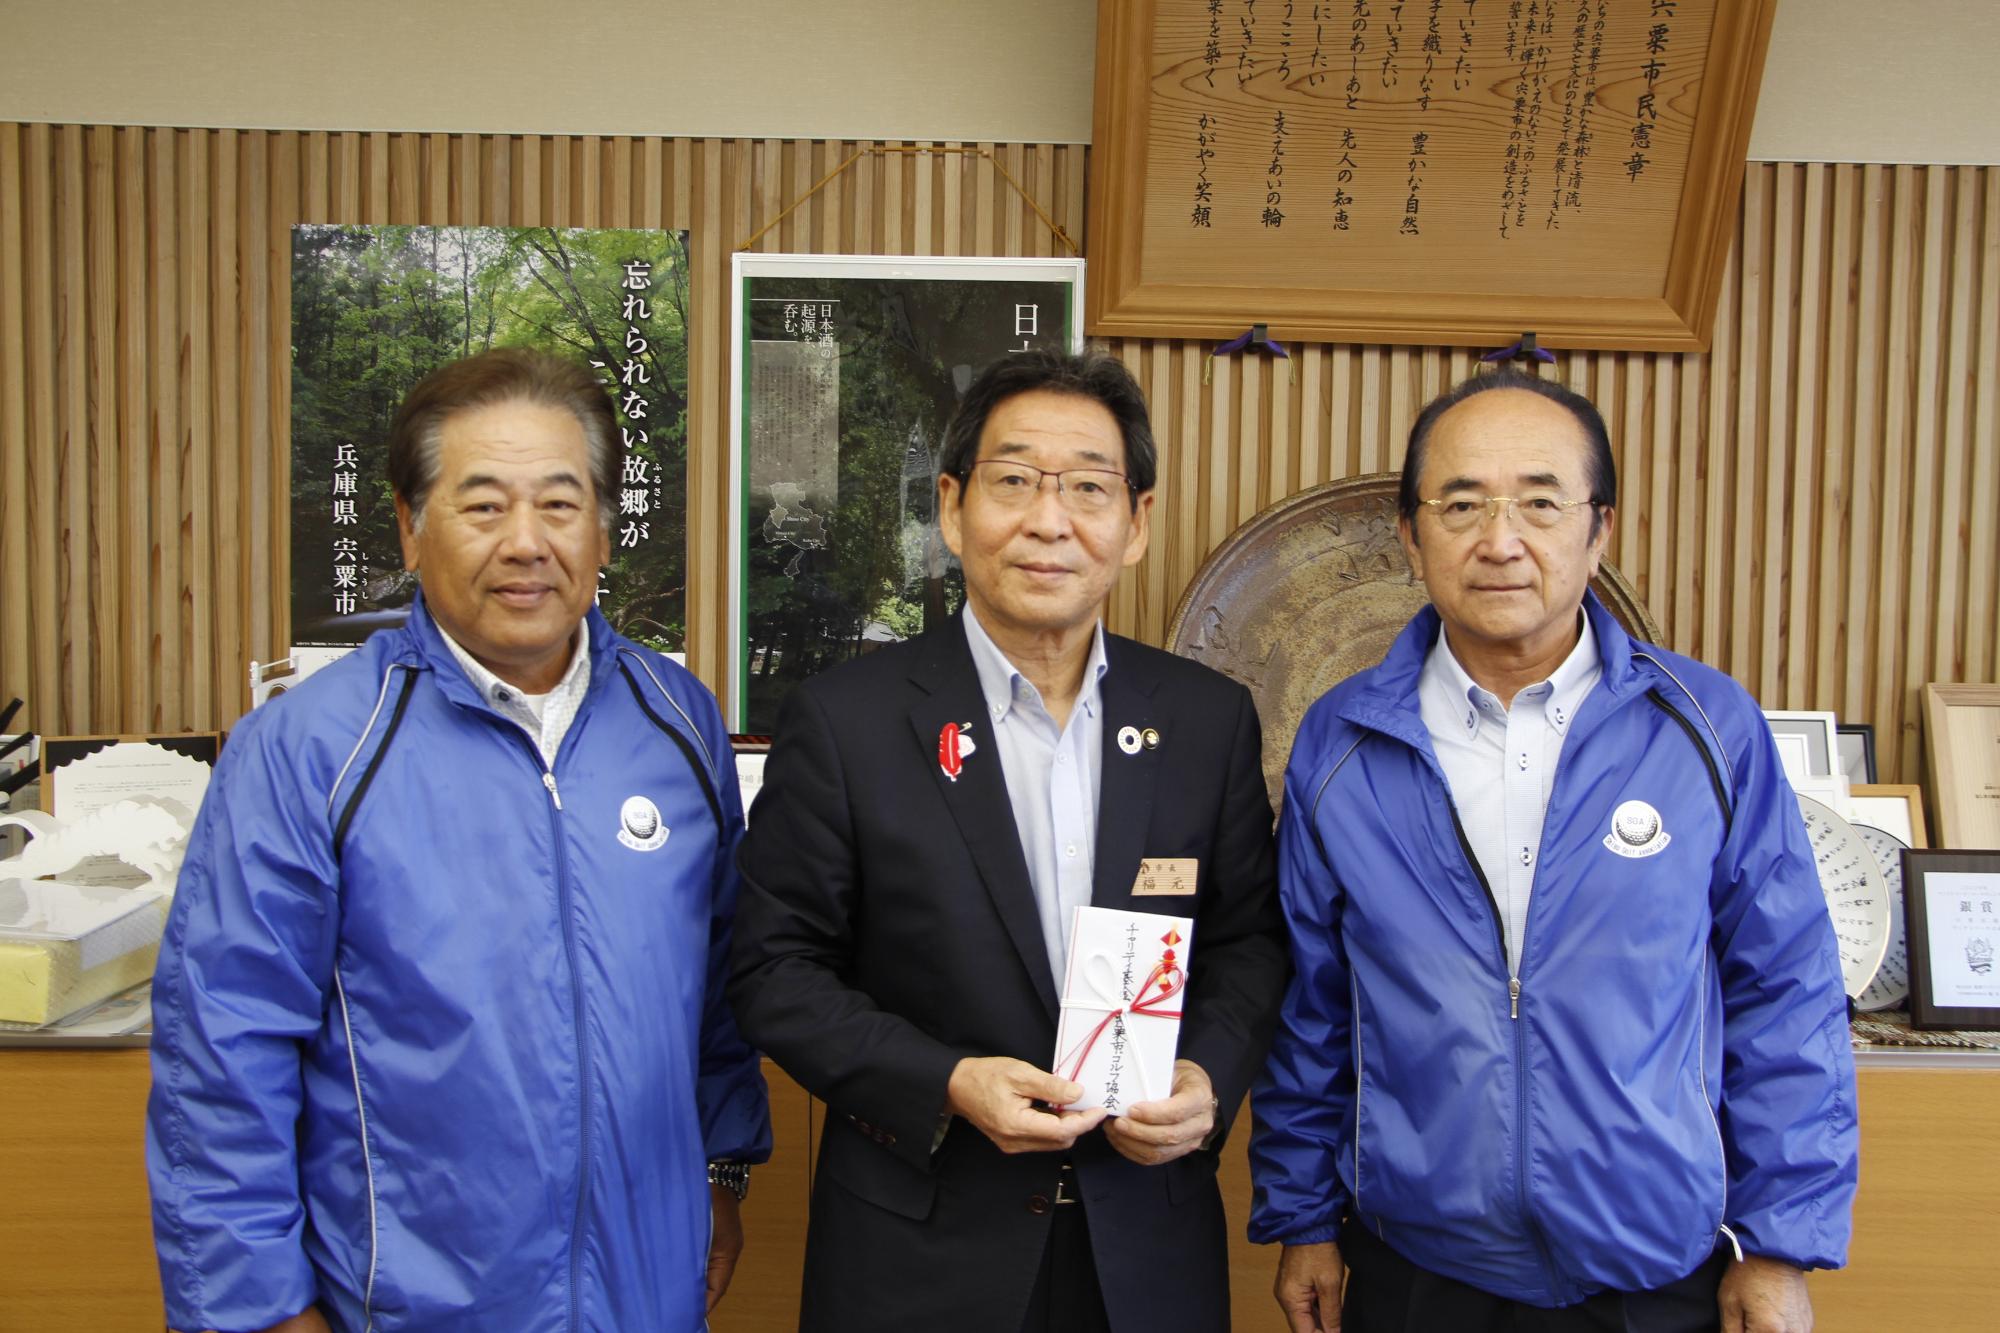 宍粟市ゴルフ協会様と寄付目録を受け取った福元市長が並んでいる写真